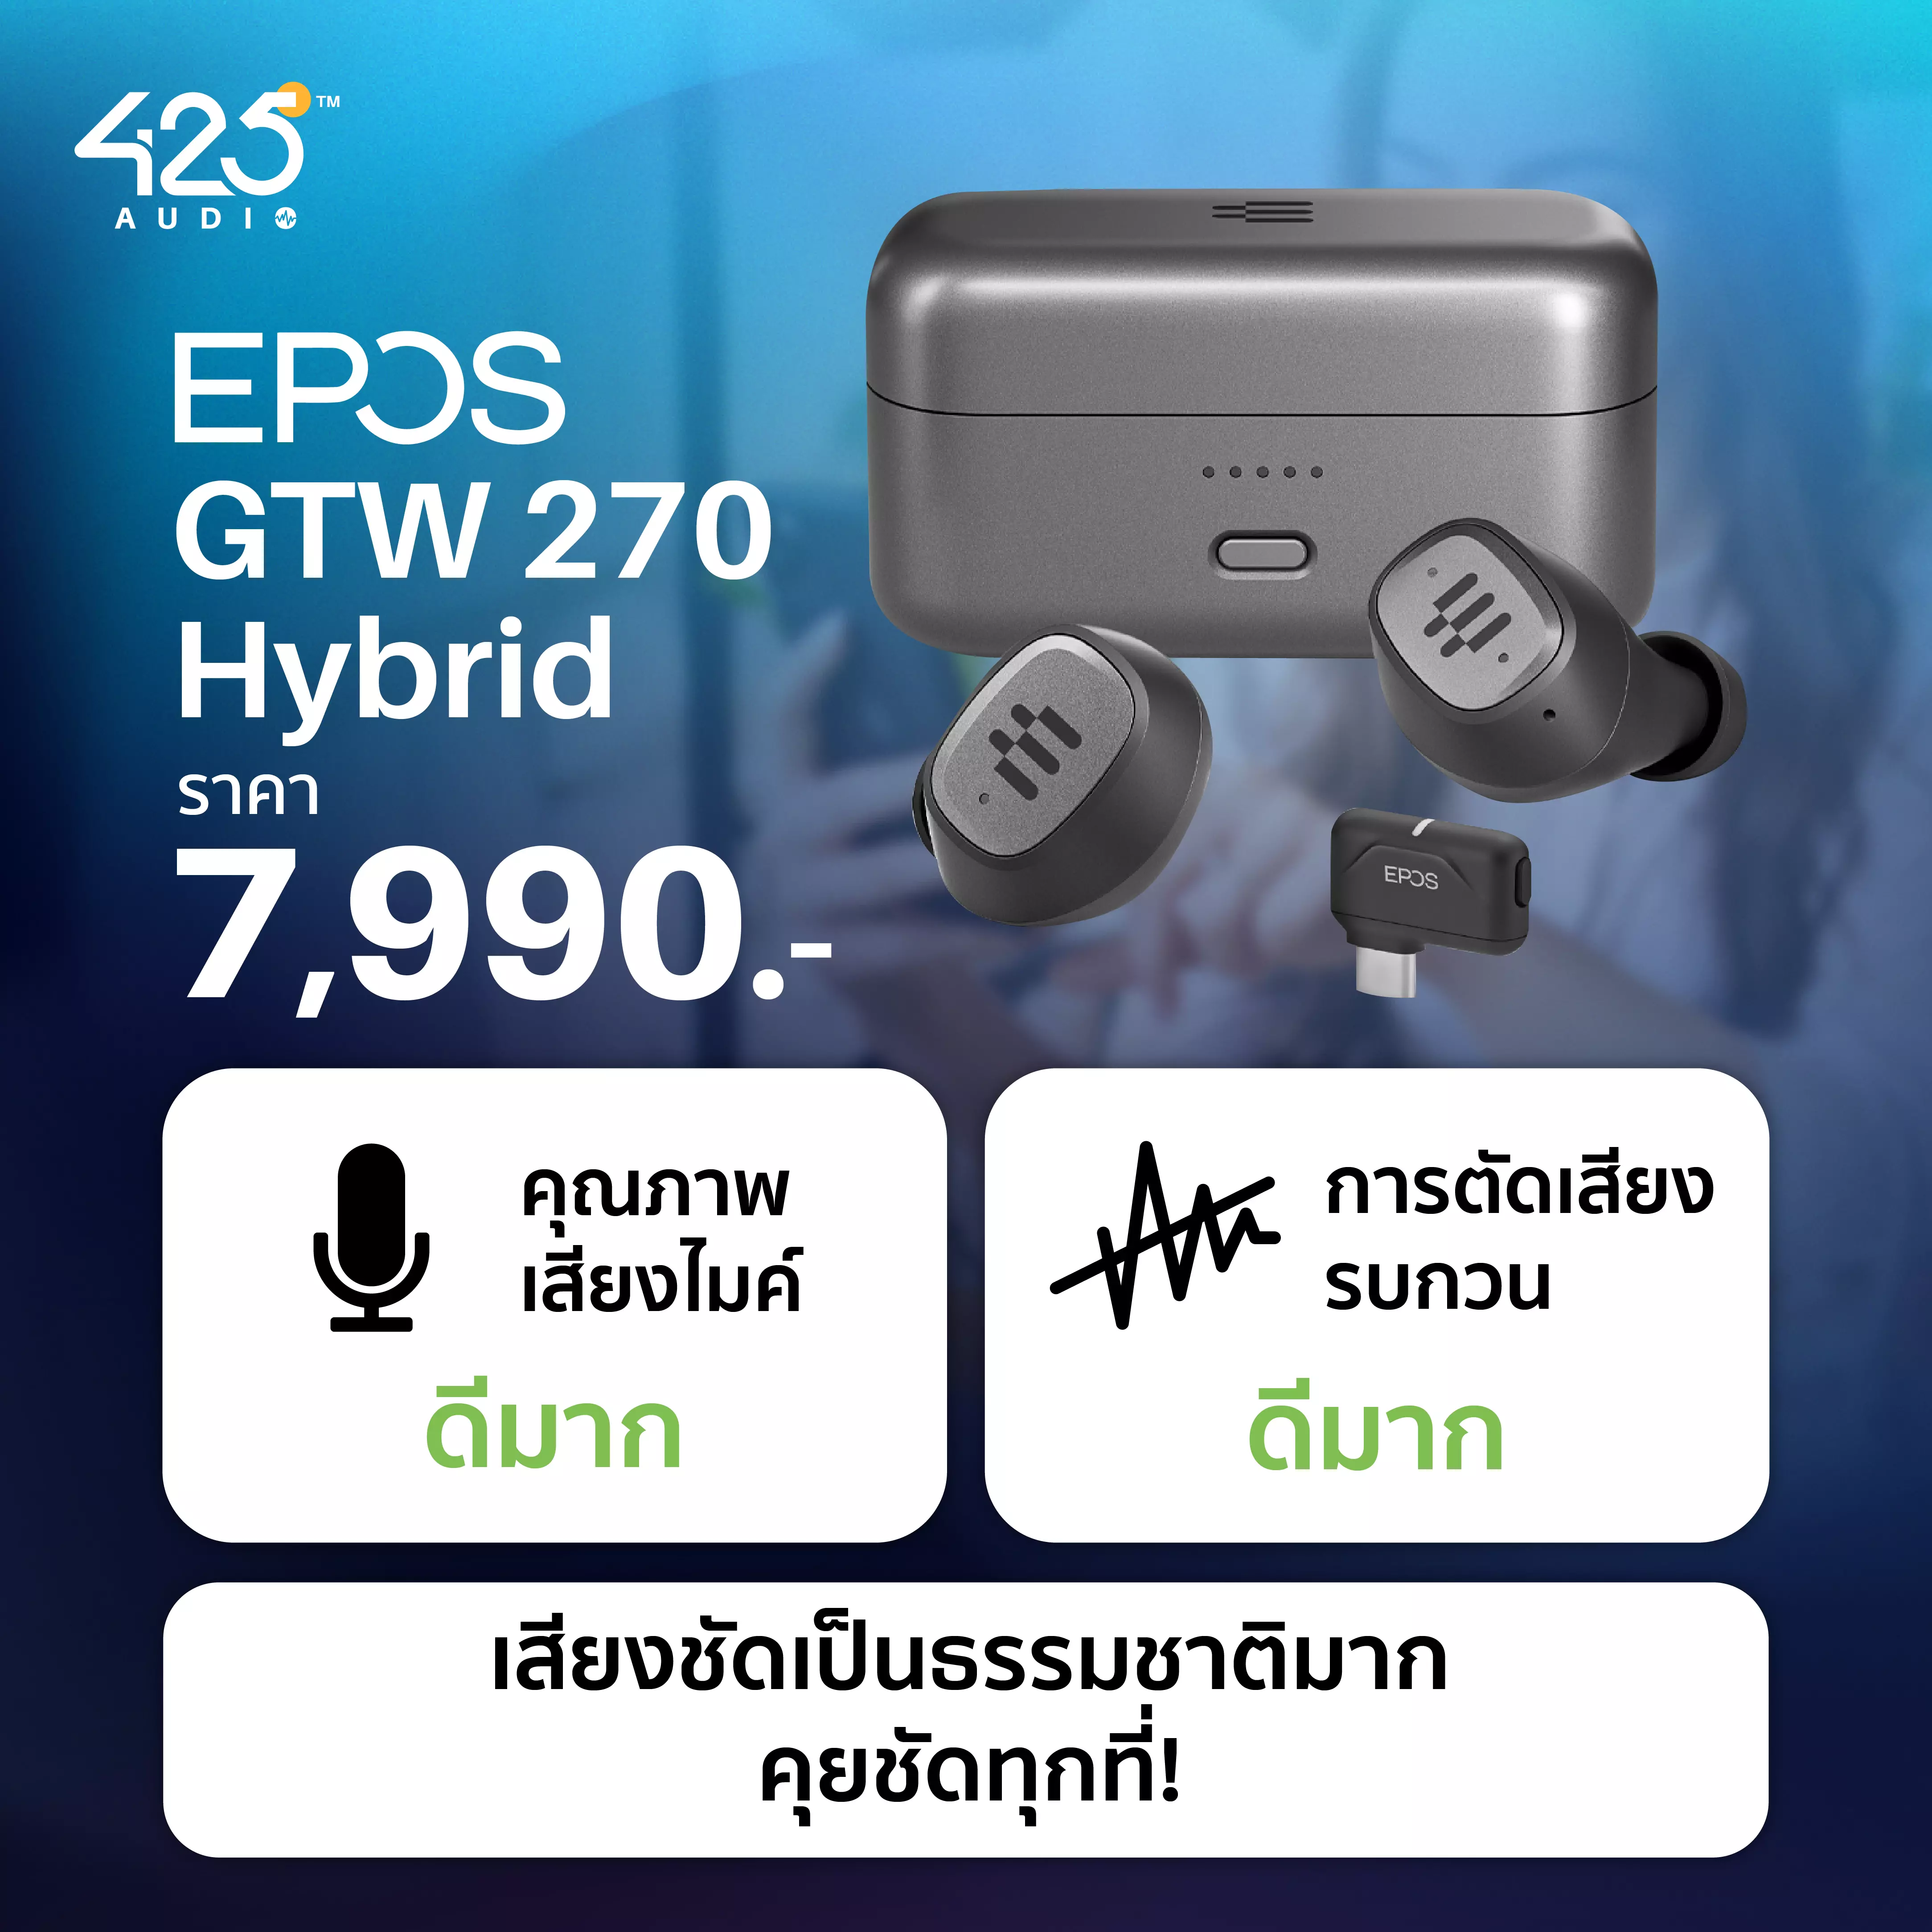 EPOS GTW 270 Hybrid True Wireless หูฟัง tws สาย Gaming  ที่ดีเลย์น้อยที่สุดในโลก ! รีวิวชัด คัดของดี สั่งง่าย ส่งไว ได้ของชัวร์